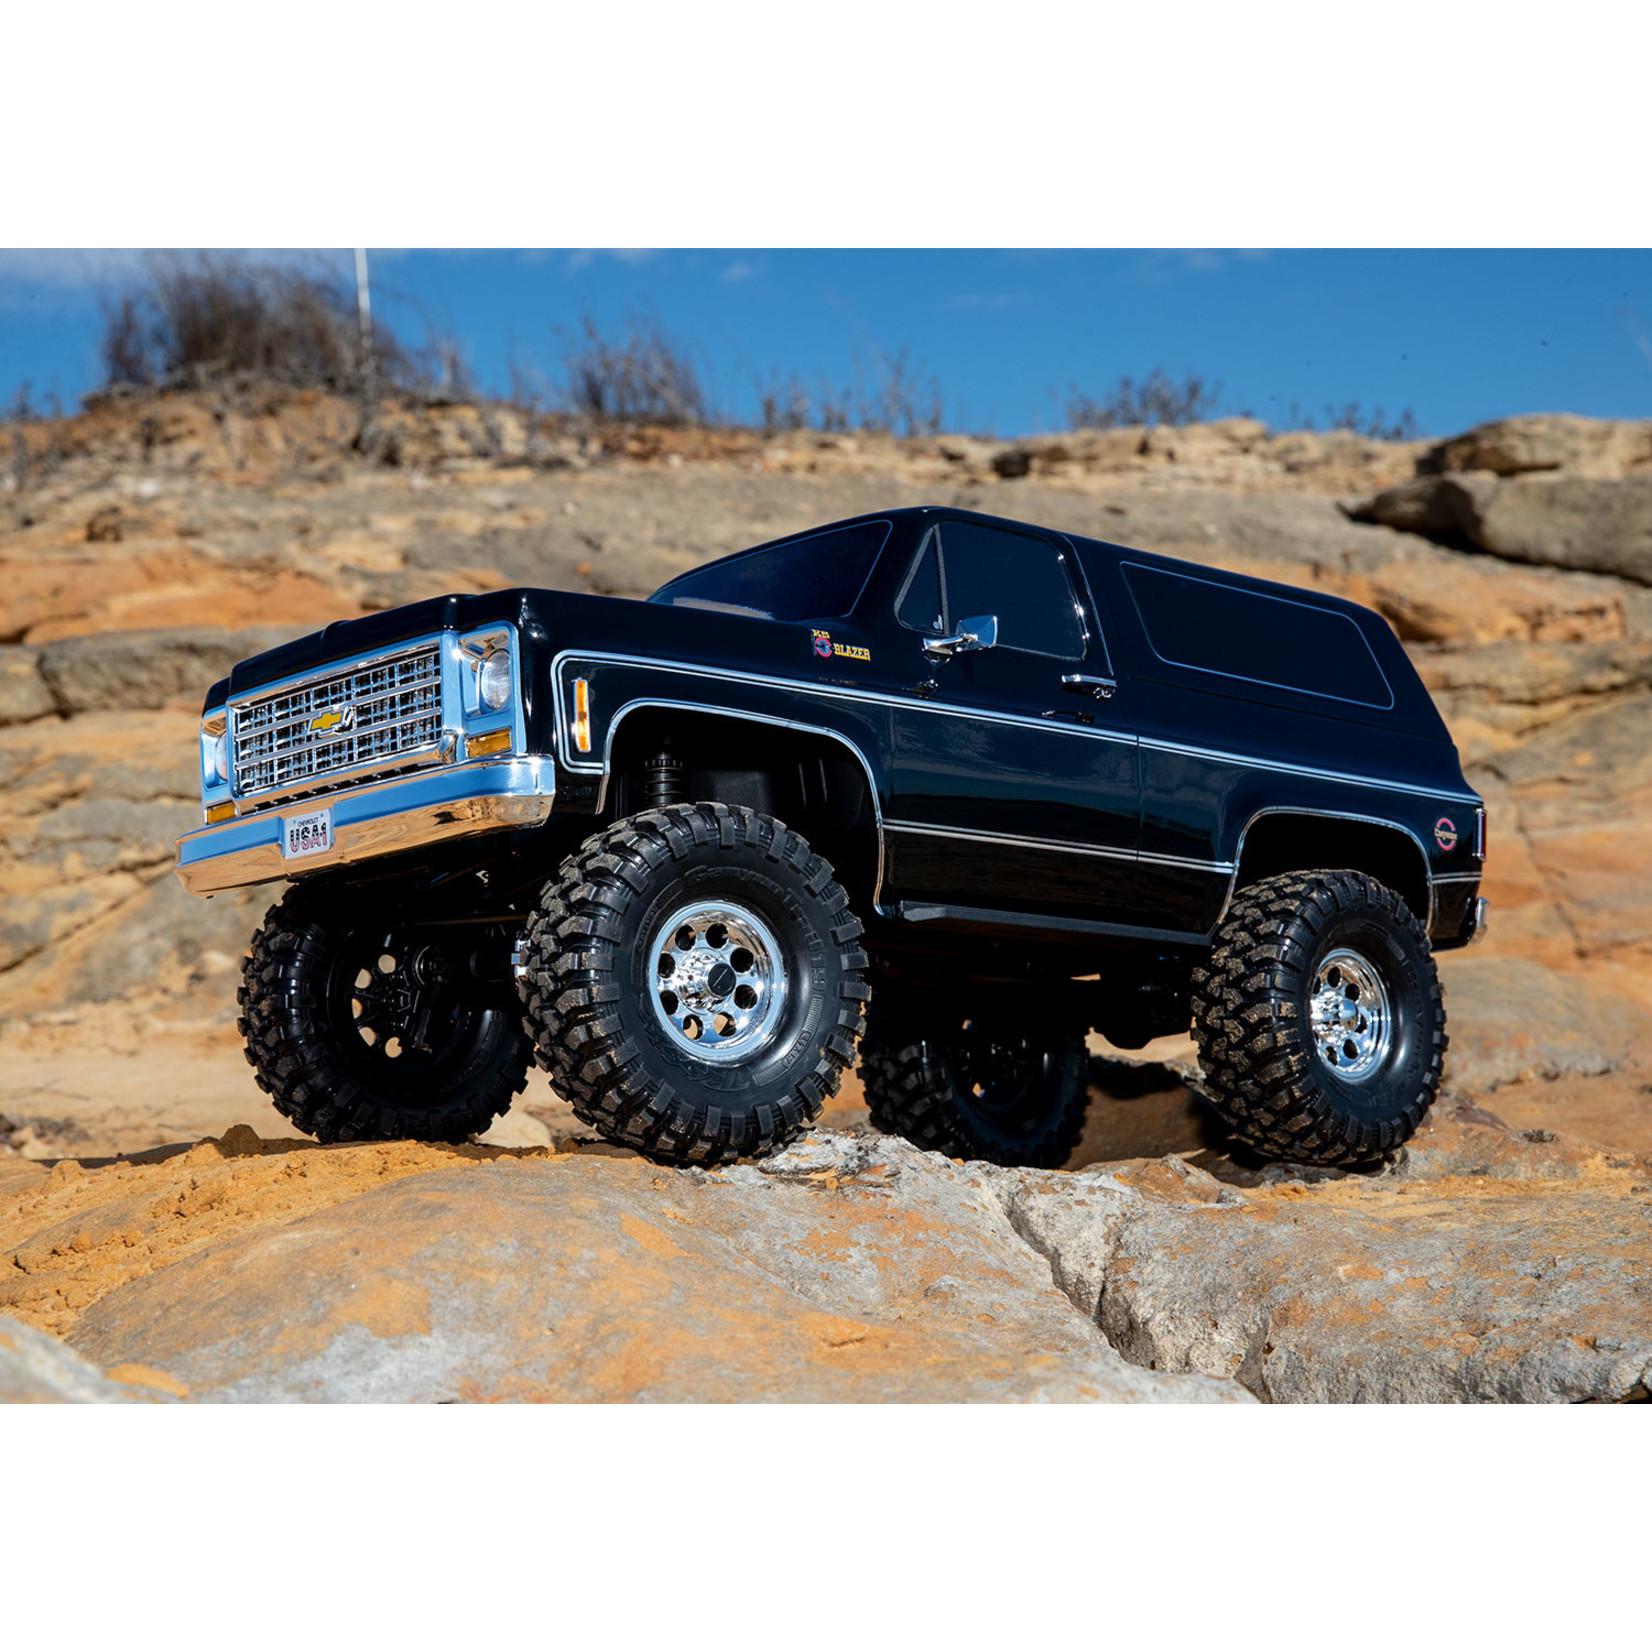 Traxxas Traxxas TRX-4 1/10 Trail Crawler Truck w/'79 Chevrolet K5 Blazer Body (Black) w/TQi 2.4GHz Radio #82076-4-BLK